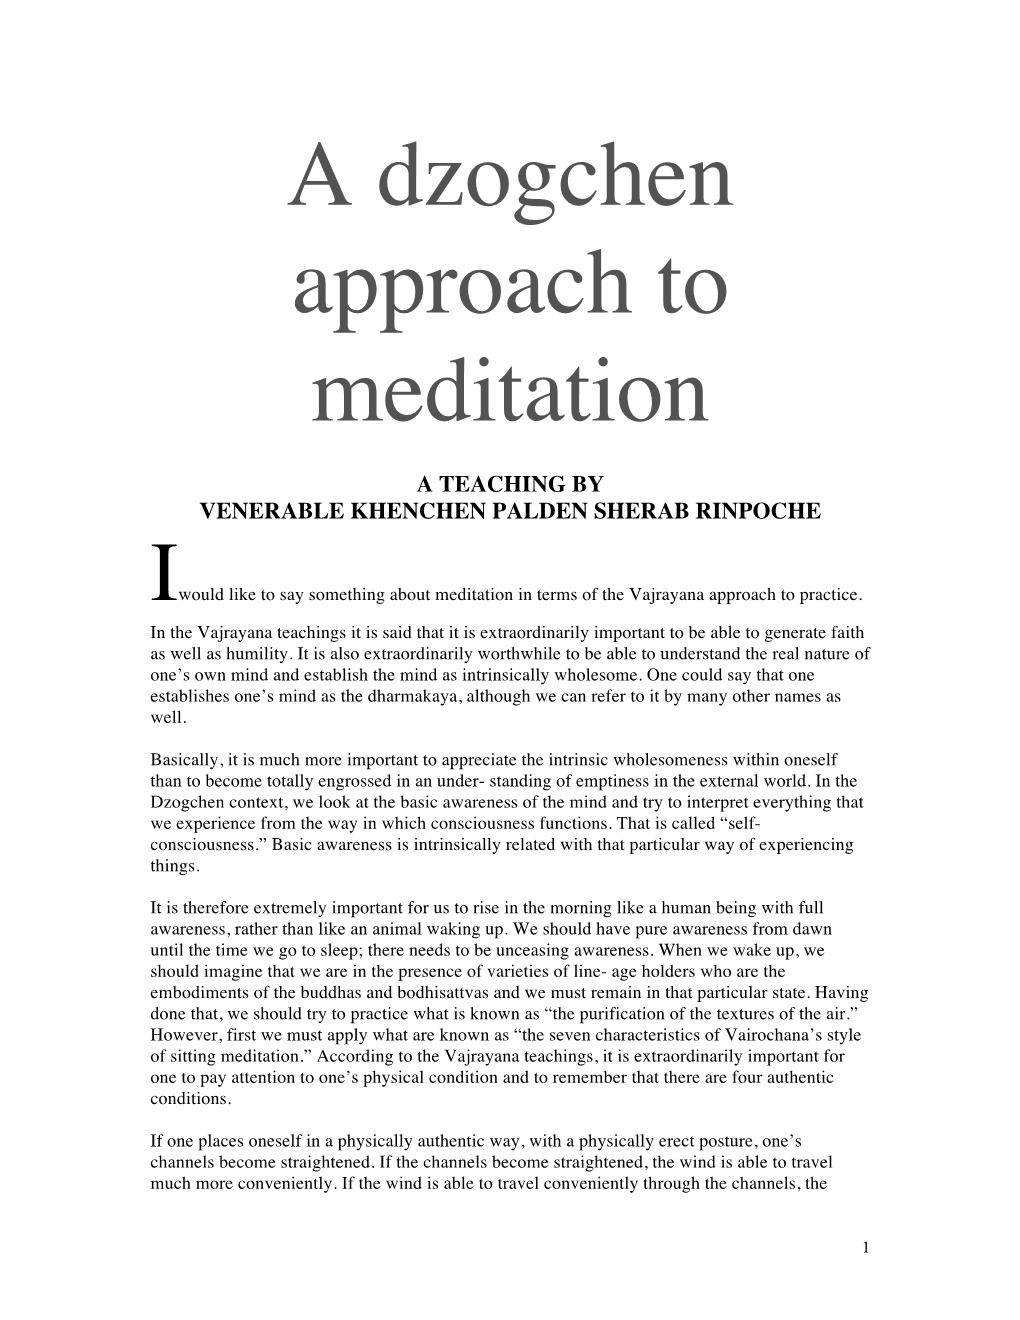 A Dzogchen Approach to Meditation